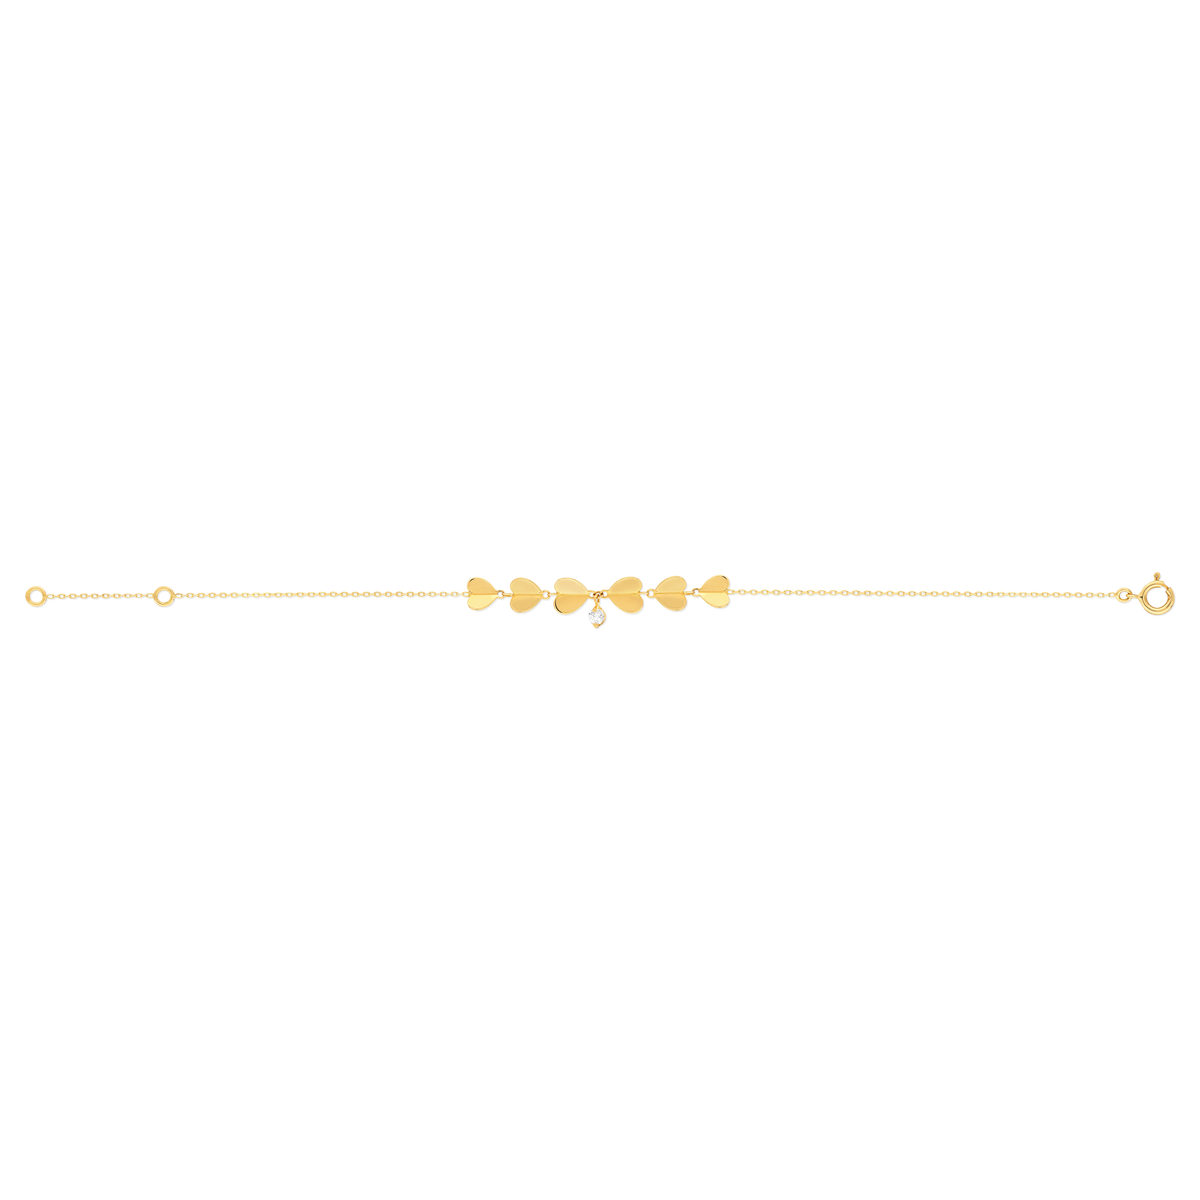 Bracelet or jaune 750 zirconia 18 cm, motif coeur - vue 2